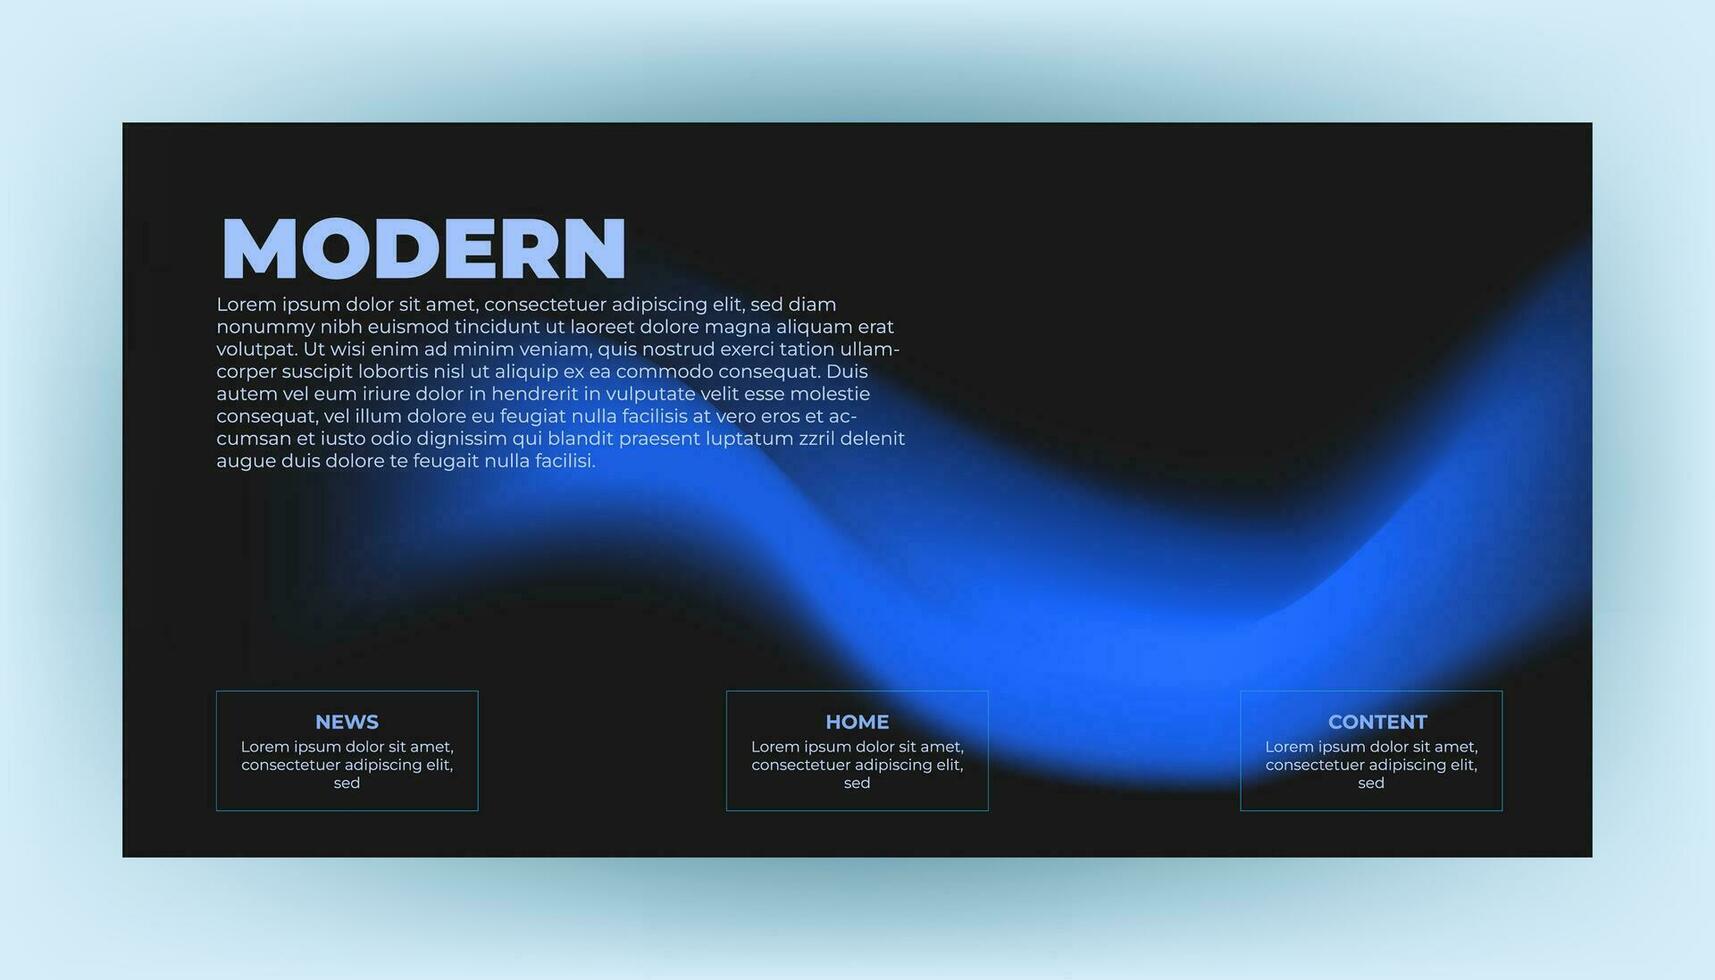 modern Hintergrund Design mit Gradient und minimalistisch Gradient Hintergrund mit geometrisch Formen zum Webseite Design, Landung Buchseite, Hintergrund, Banner, Poster, Flyer, und Präsentation vektor